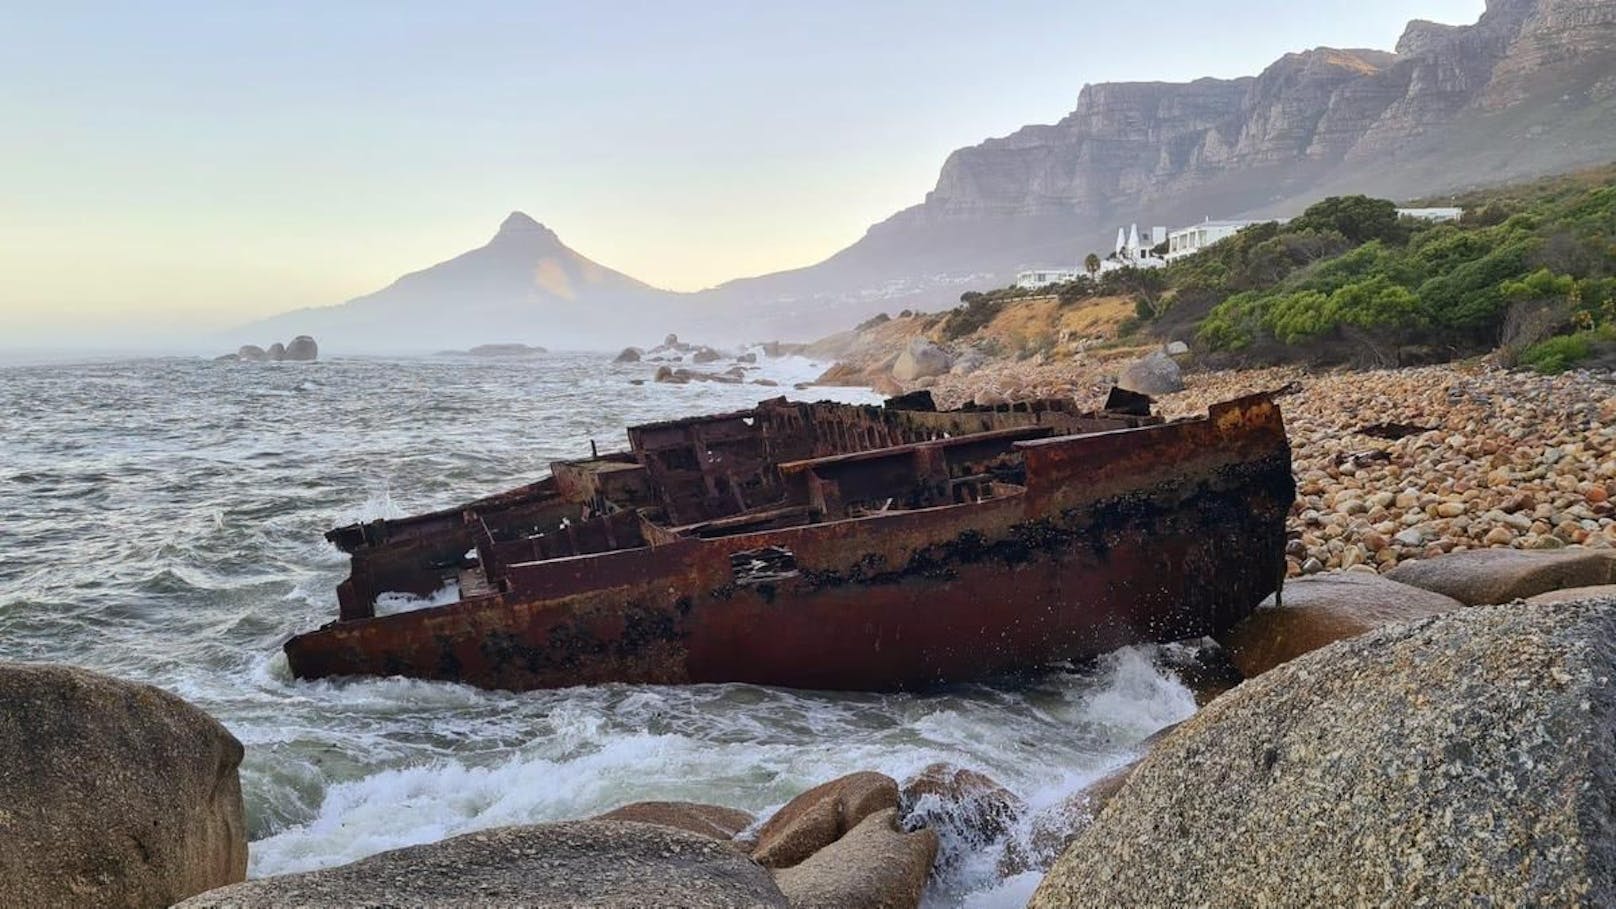 Der Öltanker Antipolis sank vor der Küste Kapstadts im Jahr 1977 – am 20. Januar 2022 wurde das Wrack wieder an den Strand gespült.